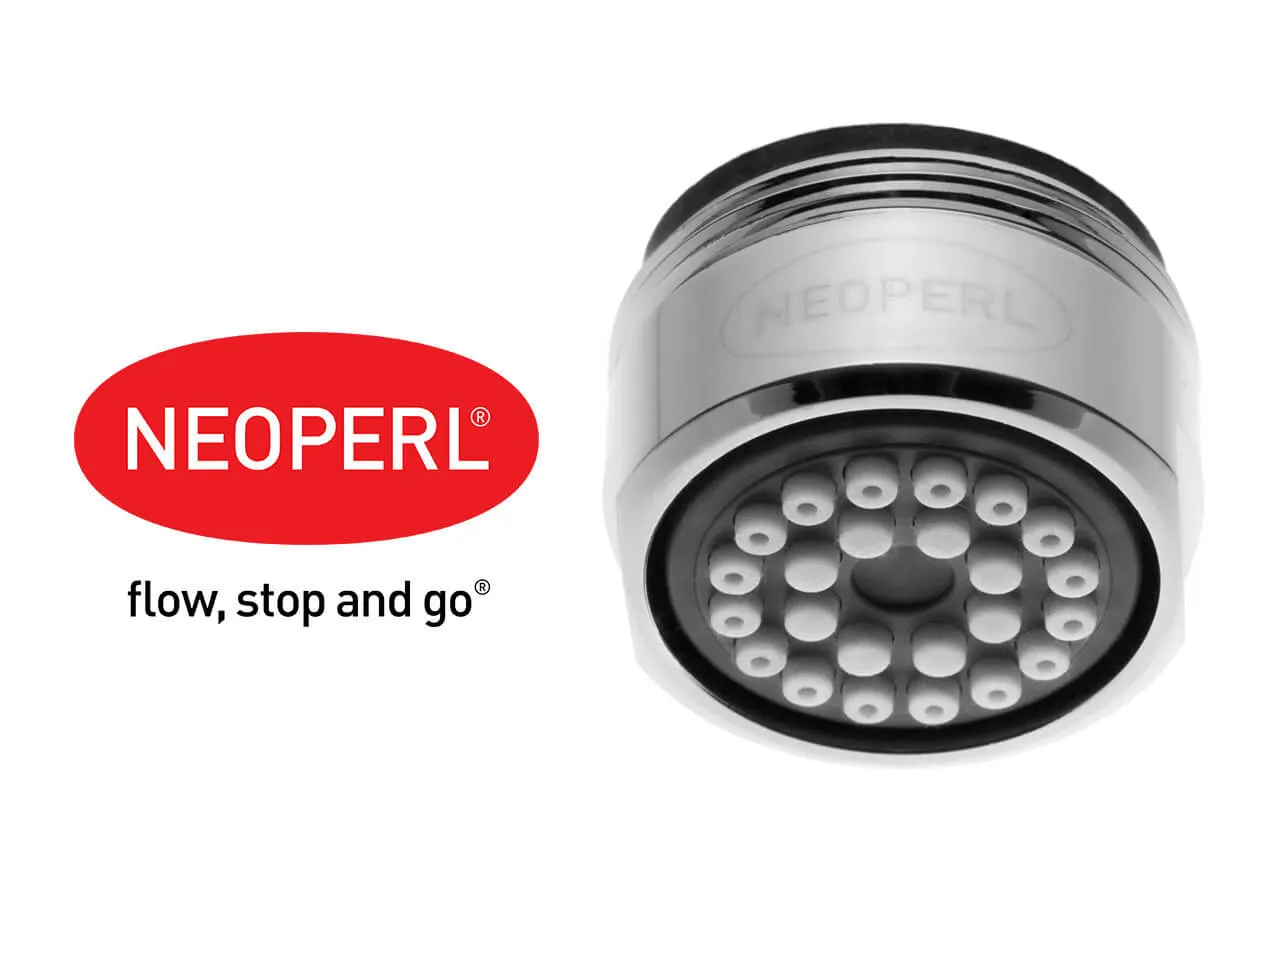 Aerator Neoperl perlator Spray 1.2 l/min